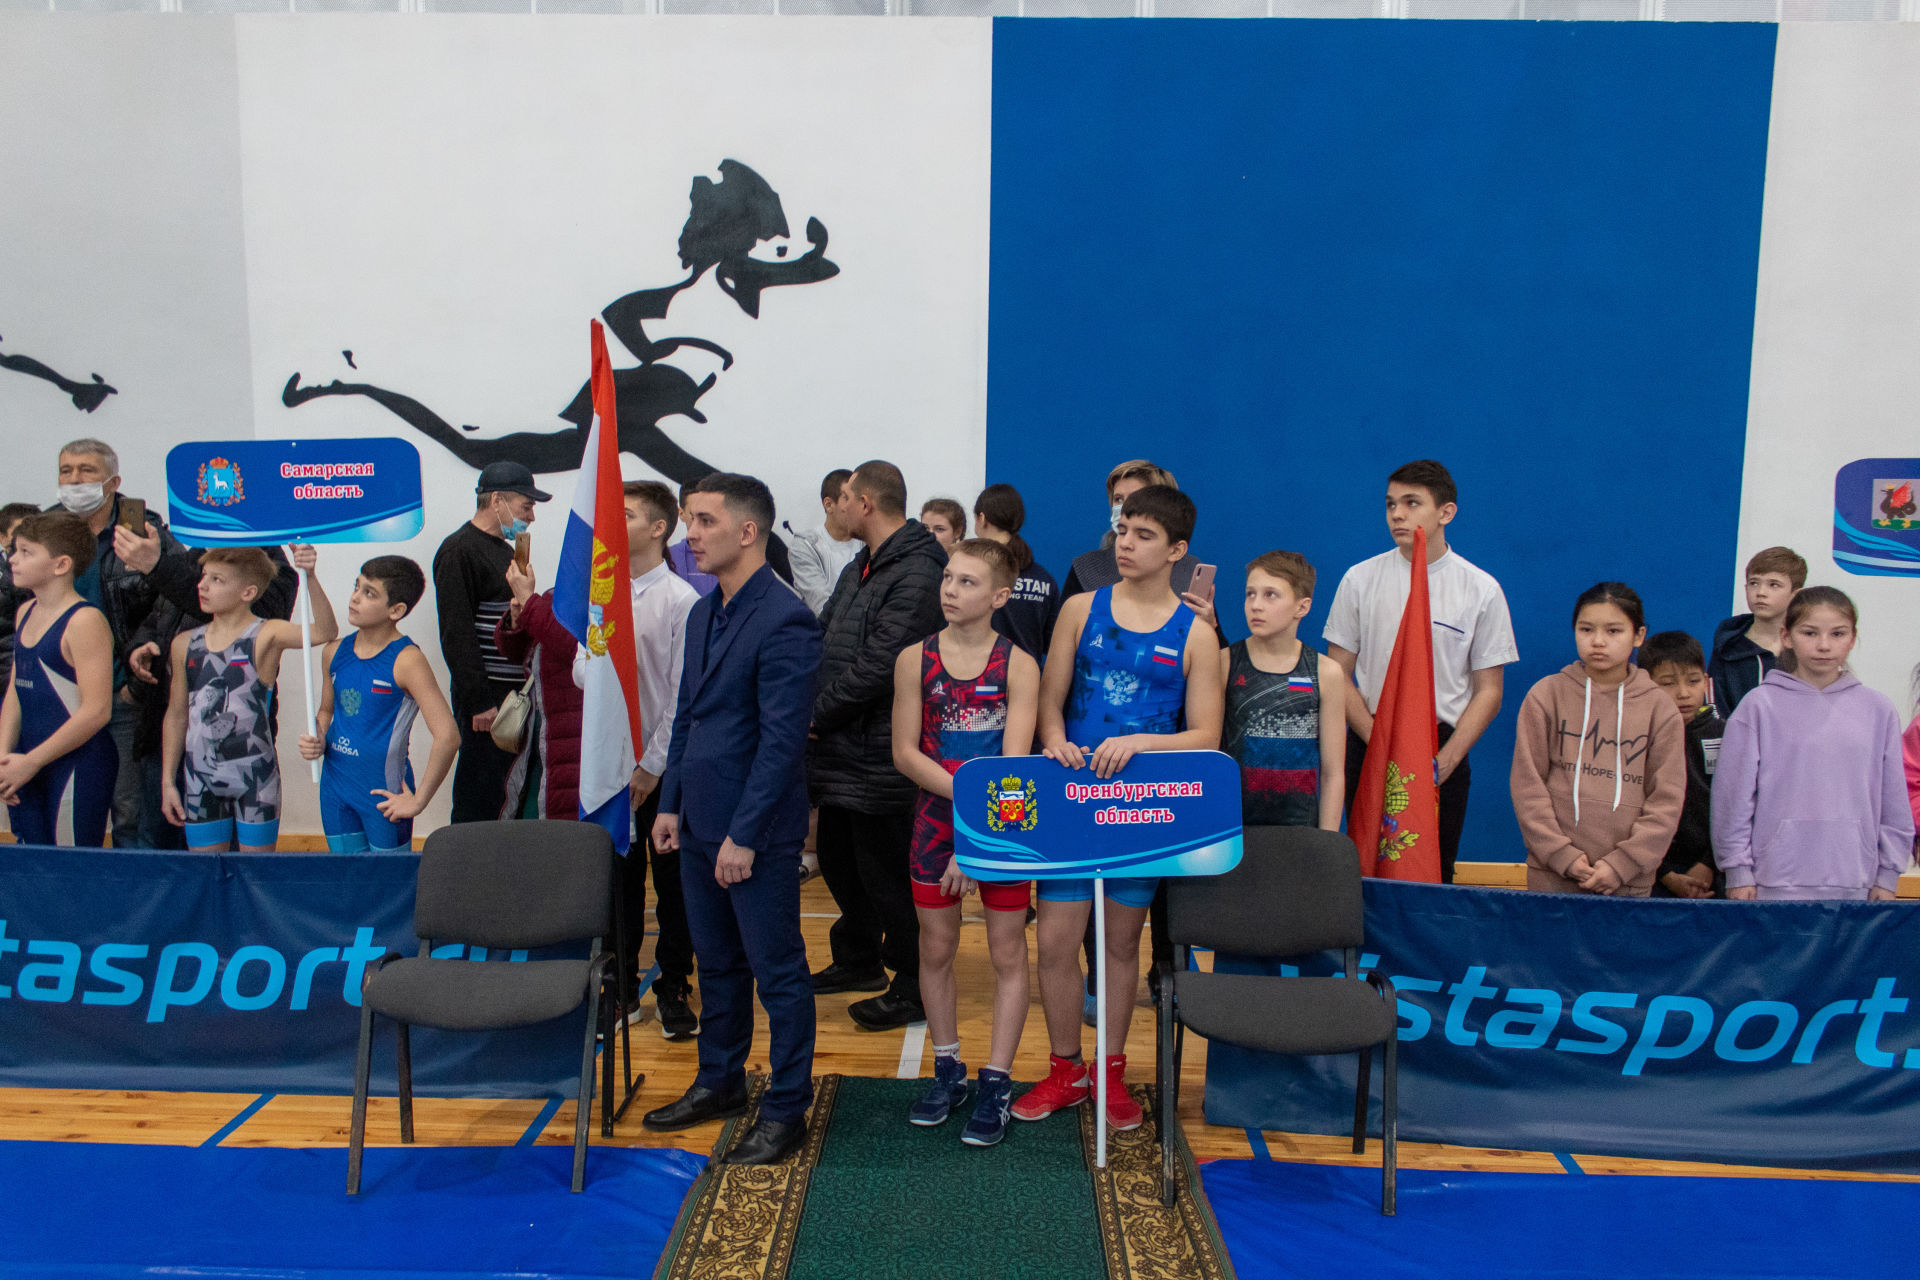 В Заинске прошел Республиканский турнир по спортивной борьбе, посвященный памяти Михаила Данилова